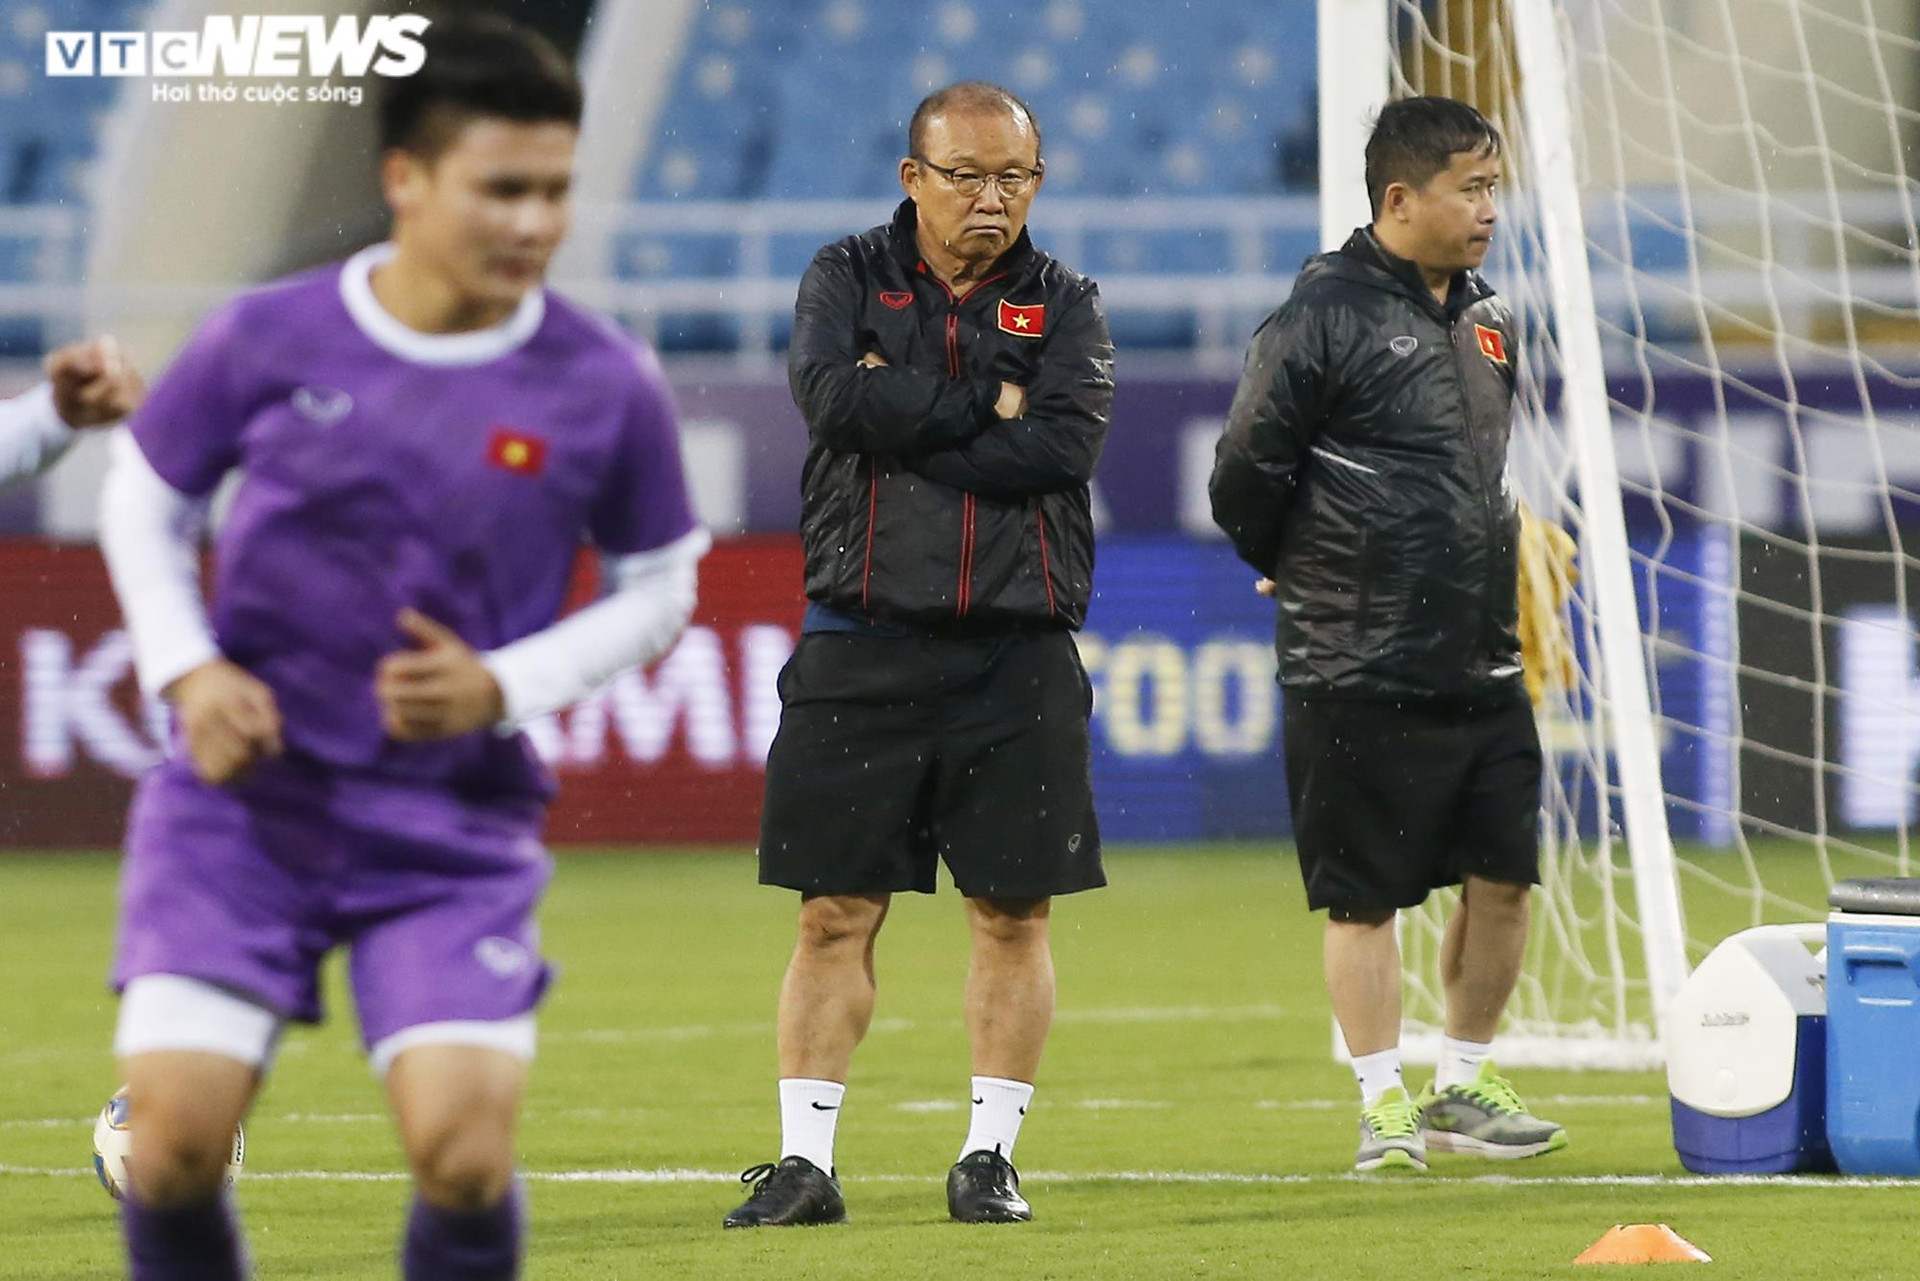 HLV Park Hang Seo đăm chiêu trước ngày tuyển Việt Nam đấu Oman - 4